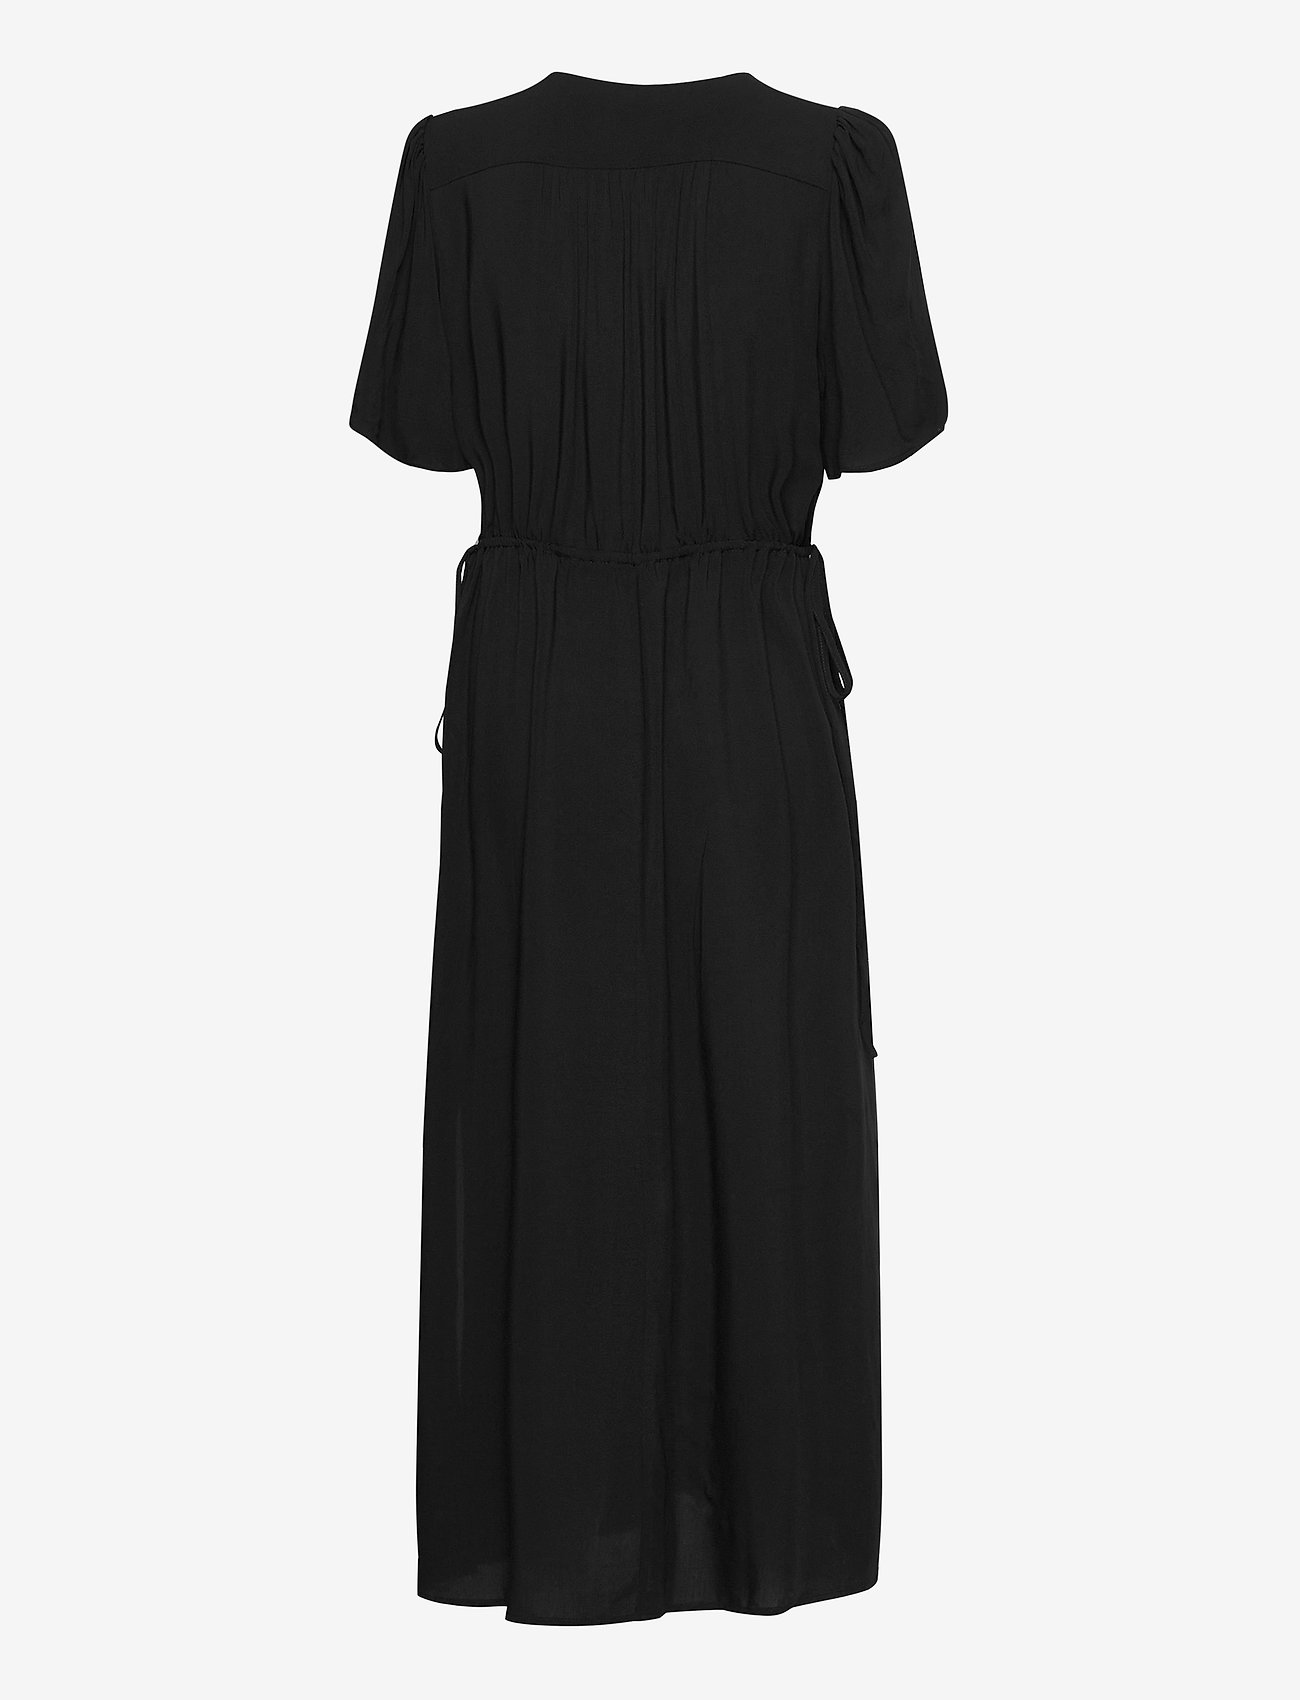 Slfwynona Damina 2 4 Ankle Slit Dress Black 58 49 € Selected Femme